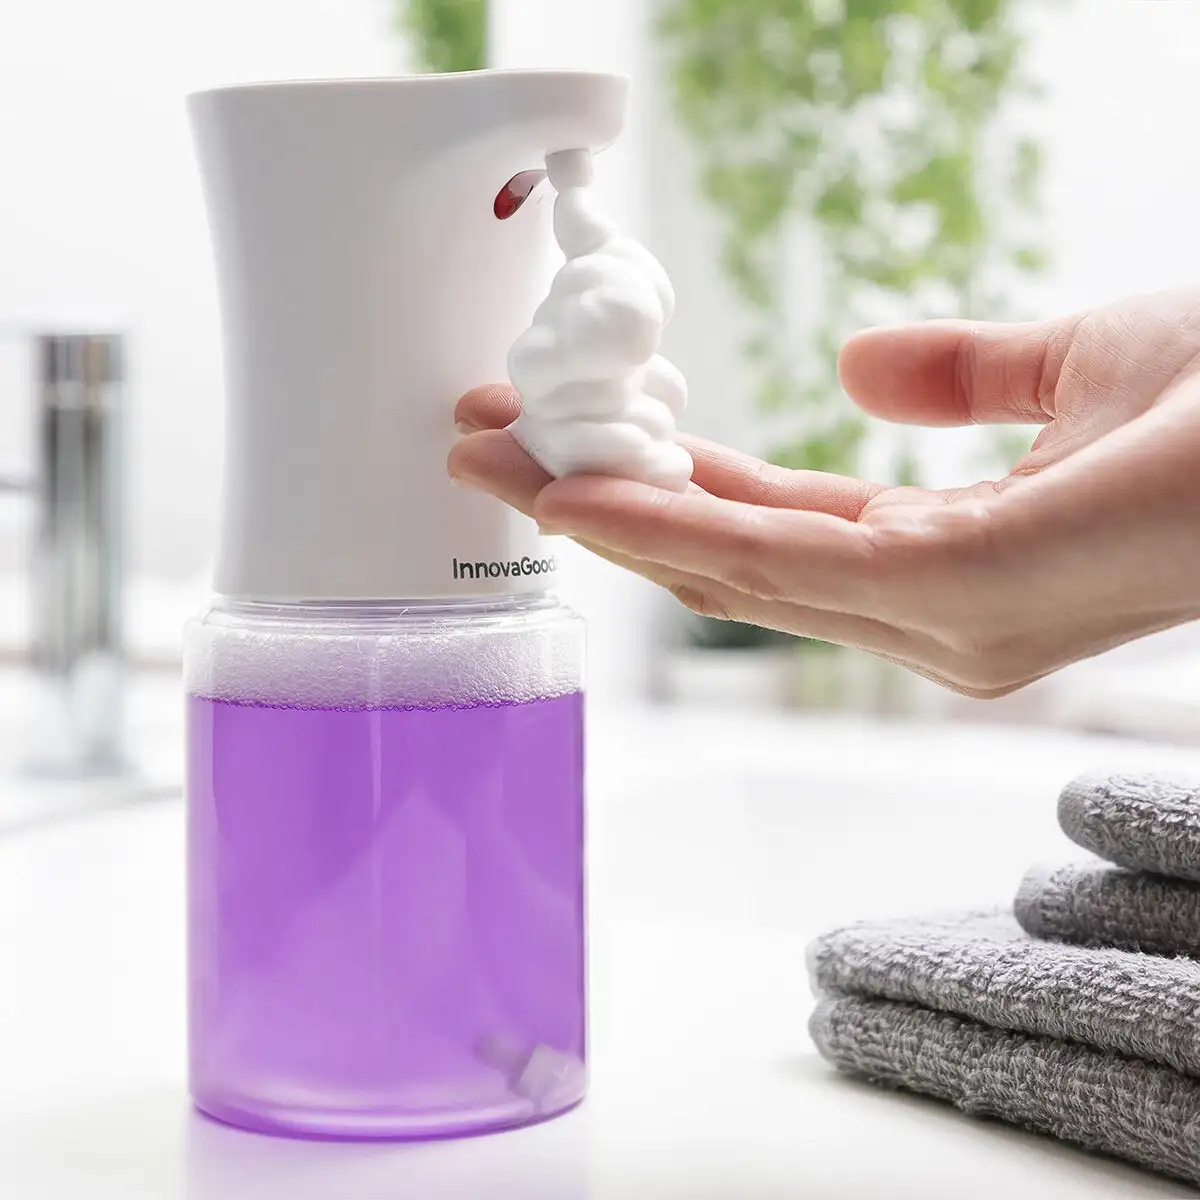 Distributeur automatique de savon mousse avec capteur foamy innovagoods_5728. DIAYTAR SENEGAL - Là où Chaque Produit est une Trouvaille Unique. Découvrez notre boutique en ligne et trouvez des articles qui vous distinguent par leur originalité.